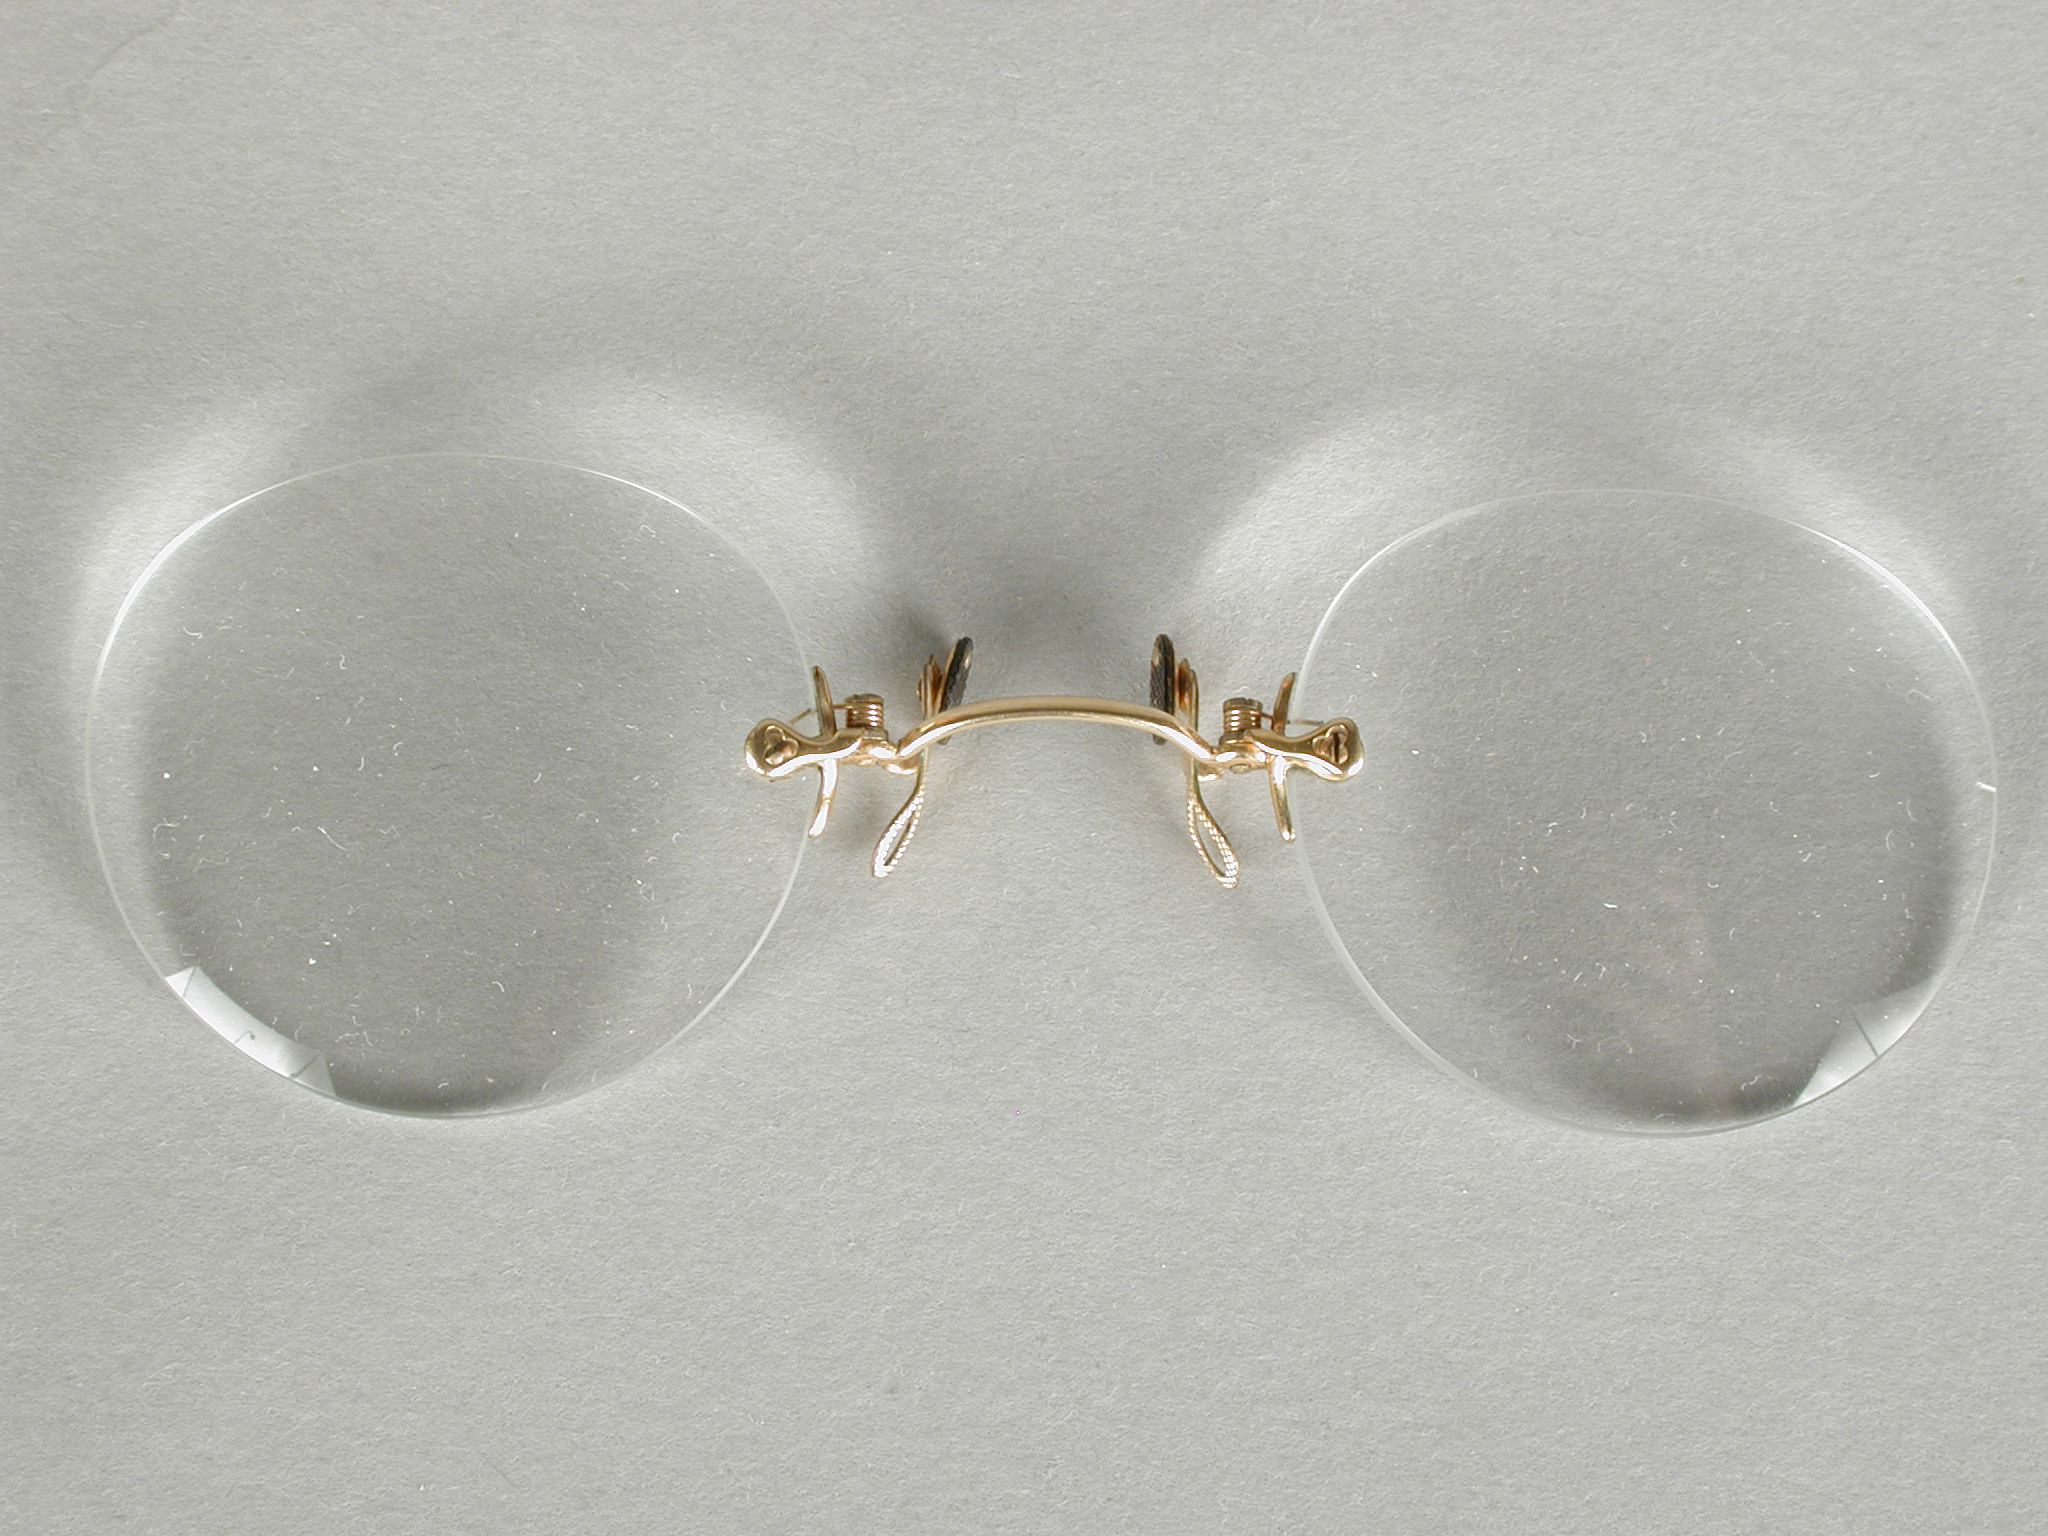 Knijpbril of pince-nez met vrijwel ronde glazen op sterkte zonder montuur, met...